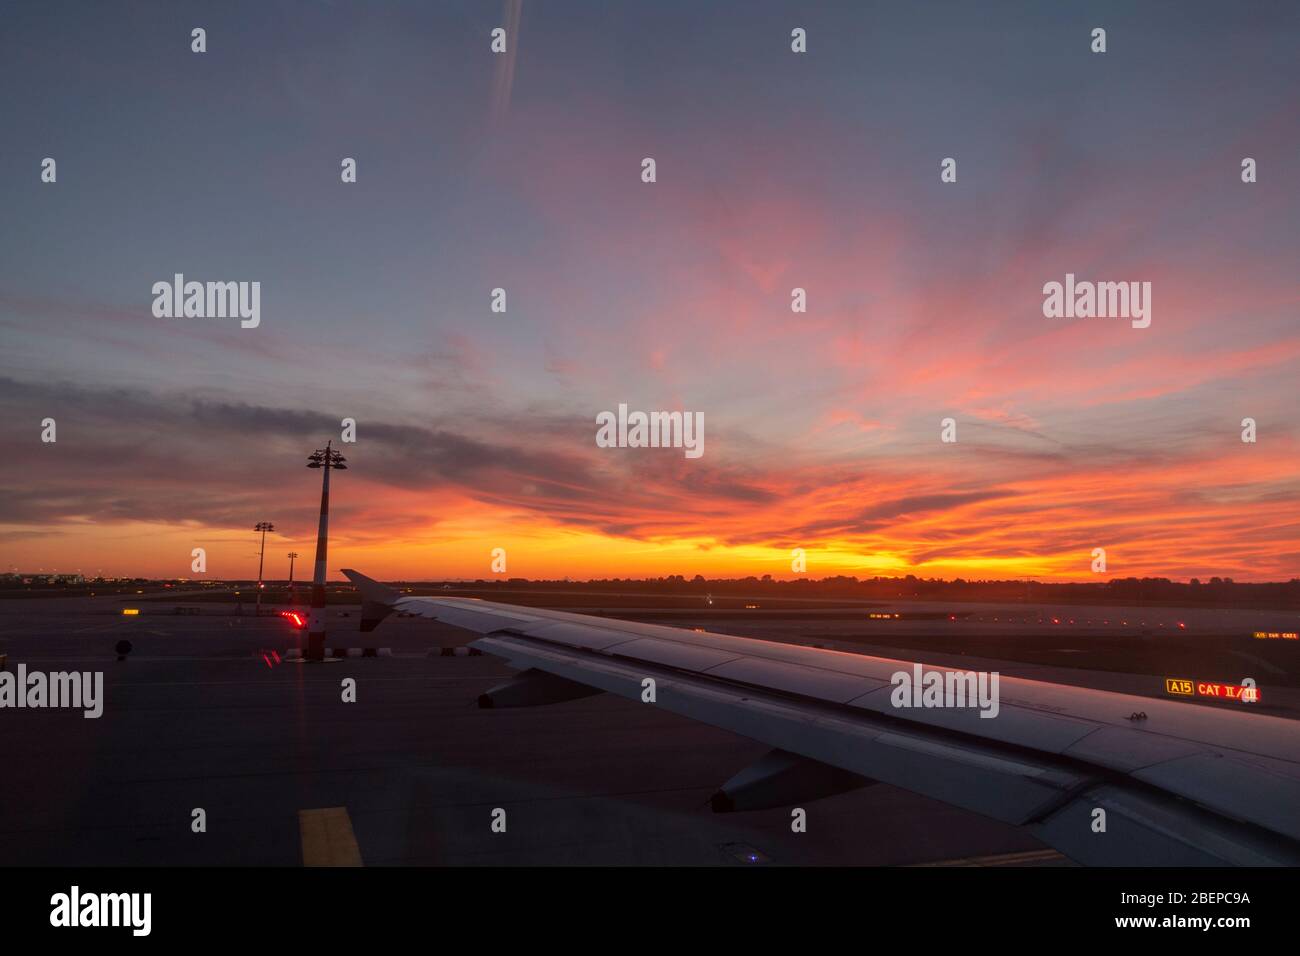 Bella vista al tramonto attraverso un'ala dell'aereo in un aereo in partenza dall'aeroporto di Monaco (Flughafen München), Monaco, Baviera, Germania. Foto Stock